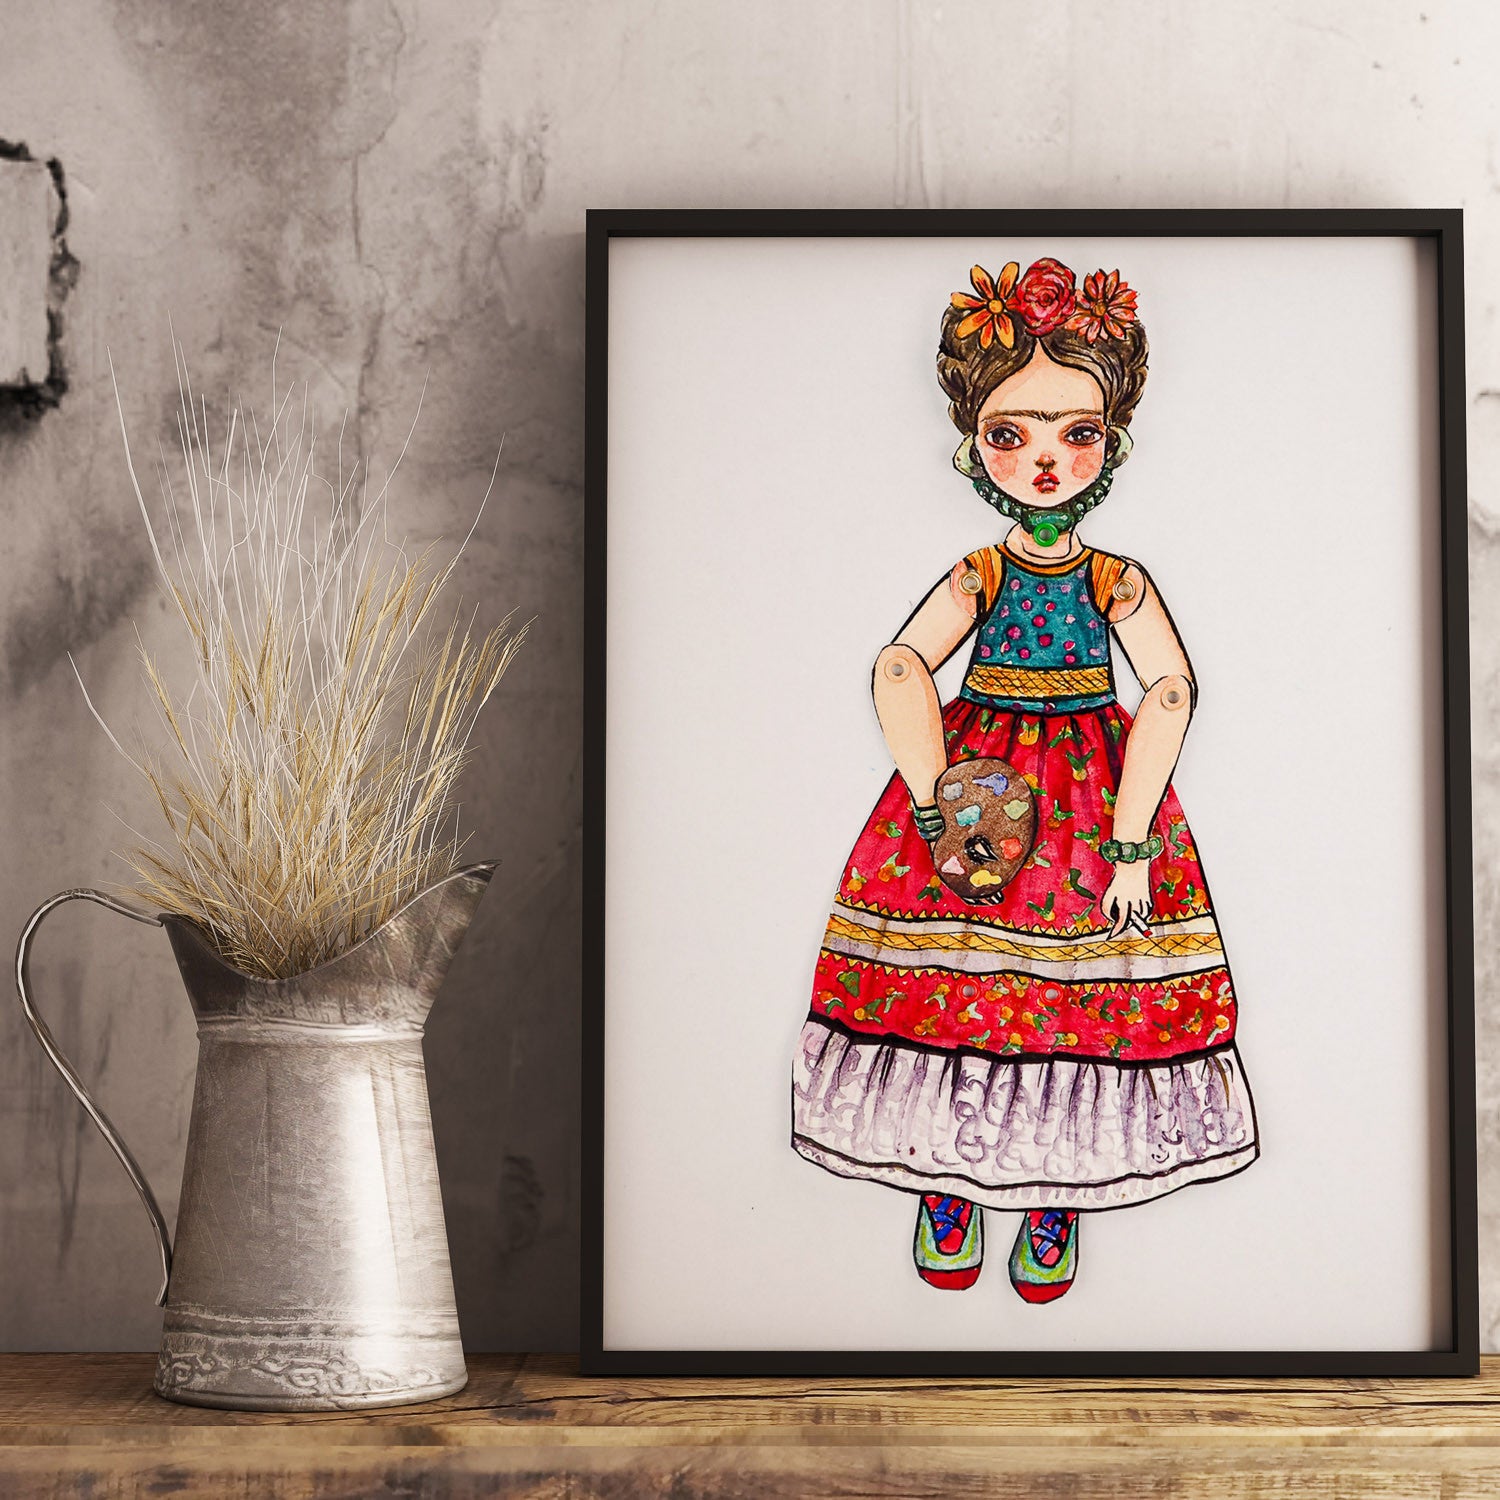 Frida watercolor original art doll by Danita, Art Doll by Danita Art